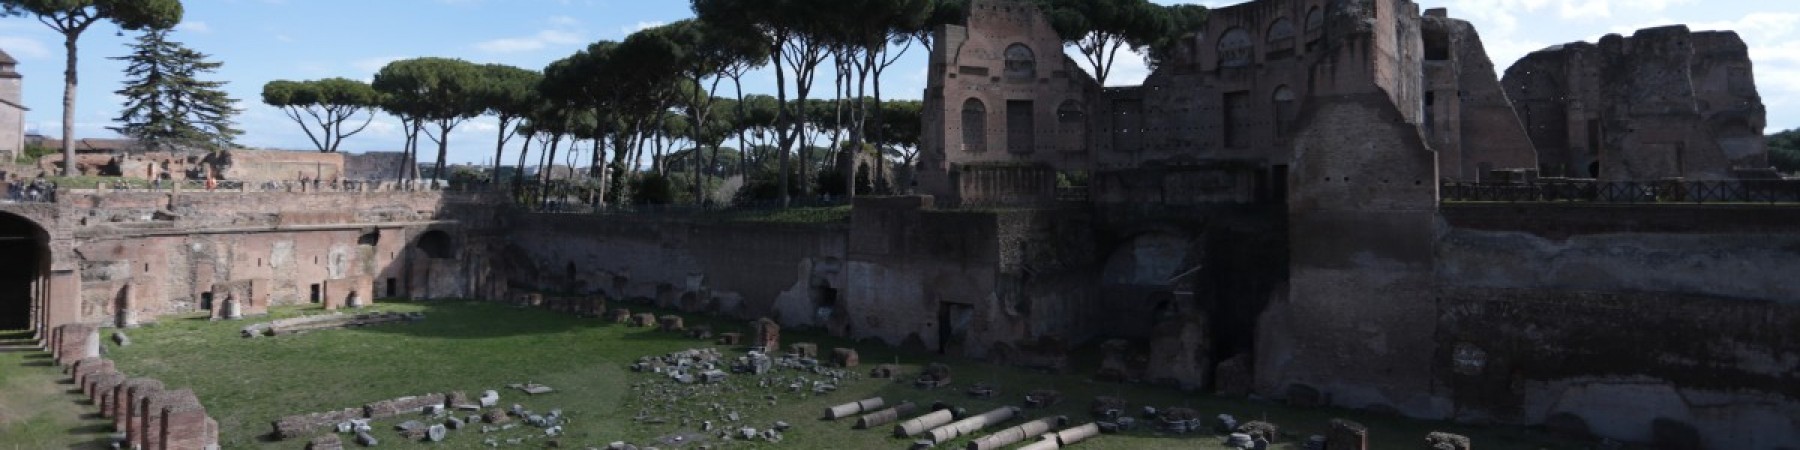 Scuole Tour Guide - Roma Antica